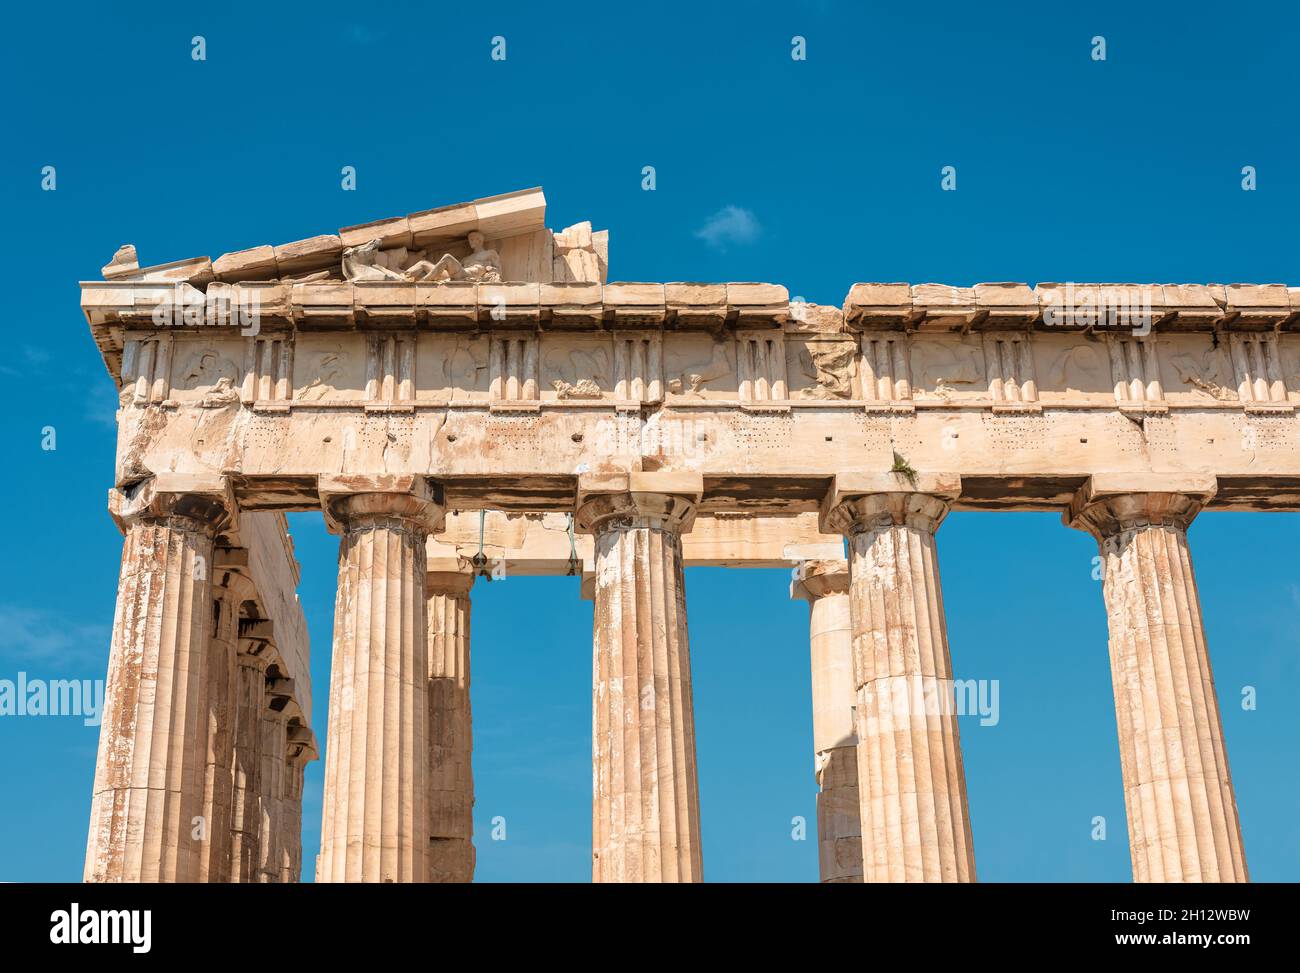 Antiker griechischer Tempel von Parthenon auf der Akropolis, Athen, Griechenland. Es ist das Wahrzeichen Athens. Ruinen eines klassischen Gebäudes im Hintergrund des Himmels. Konzept o Stockfoto